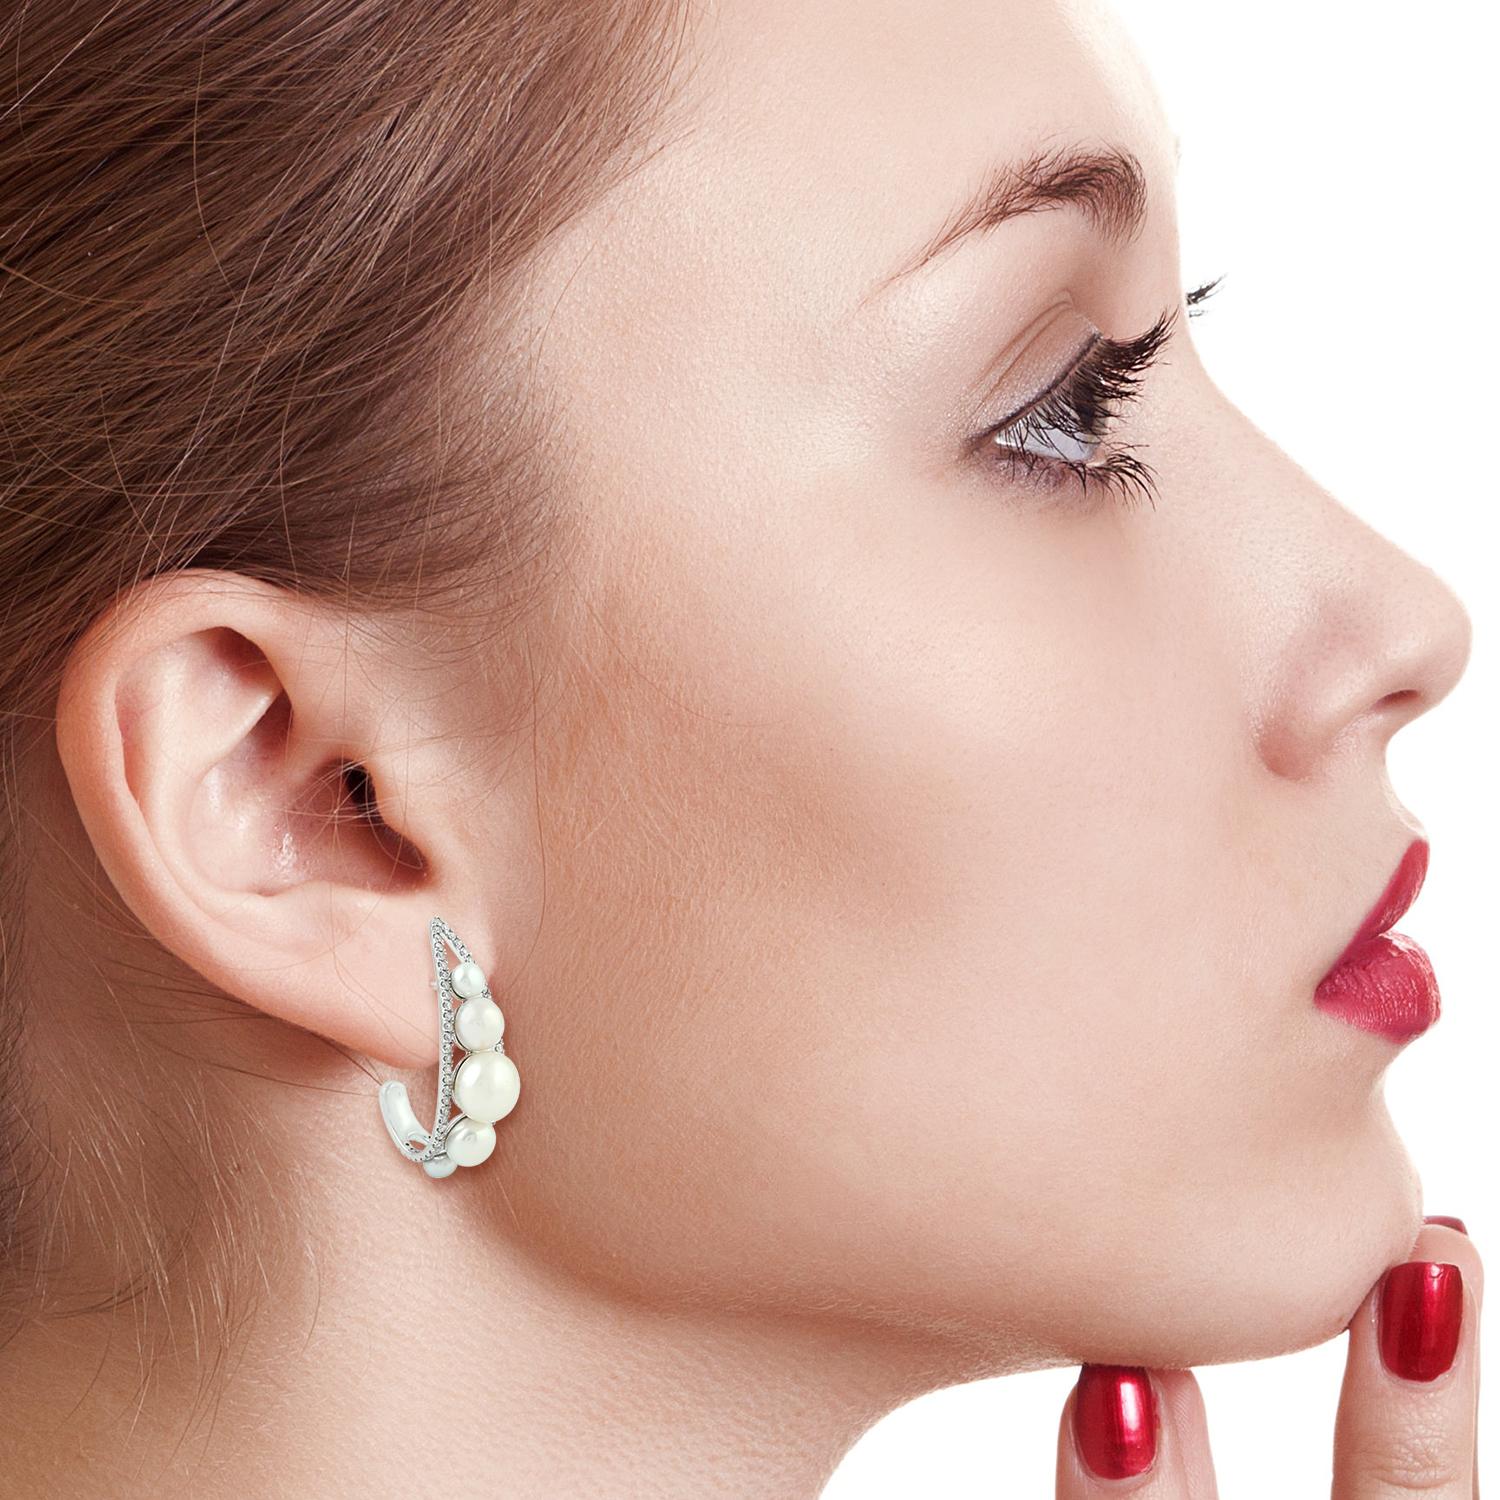 Fabriquées à la main en or 18 carats, ces magnifiques boucles d'oreilles sont serties de 12,75 carats de perles et de 0,70 carats de diamants étincelants.

SUIVRE  La vitrine de MEGHNA JEWELS pour découvrir la dernière collection et les pièces